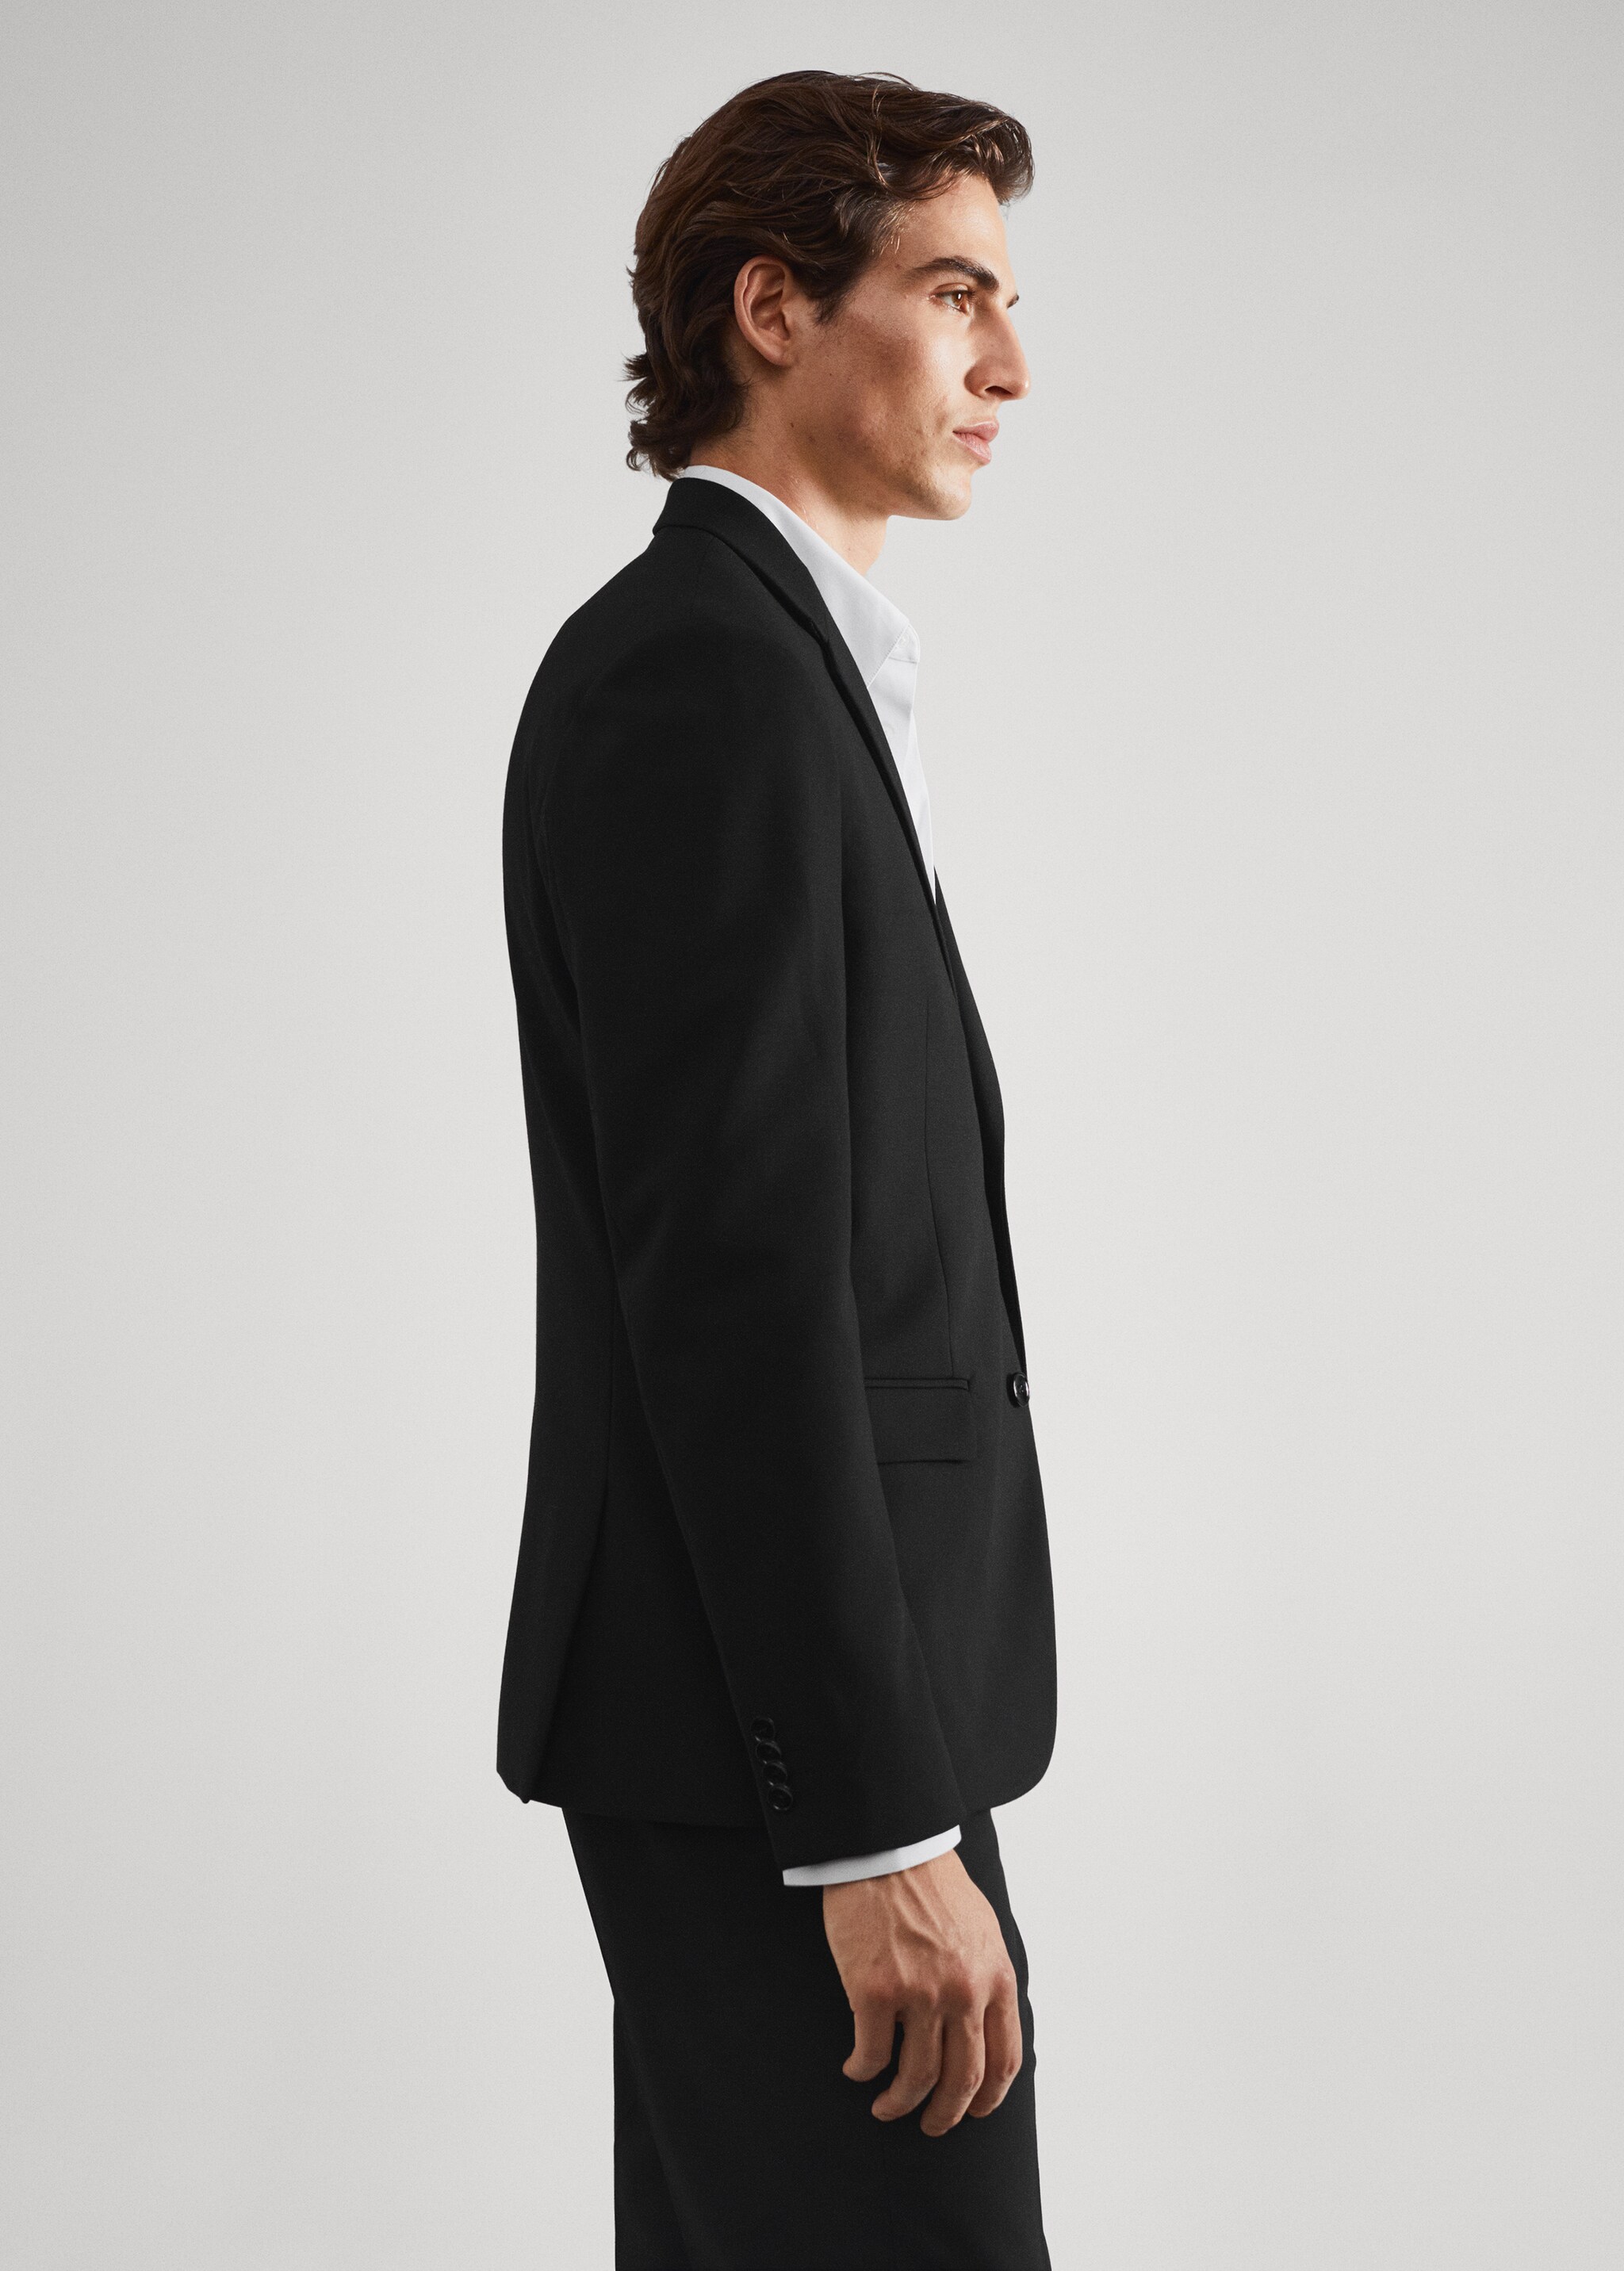 Super slim-fit suit jacket - Details of the article 6